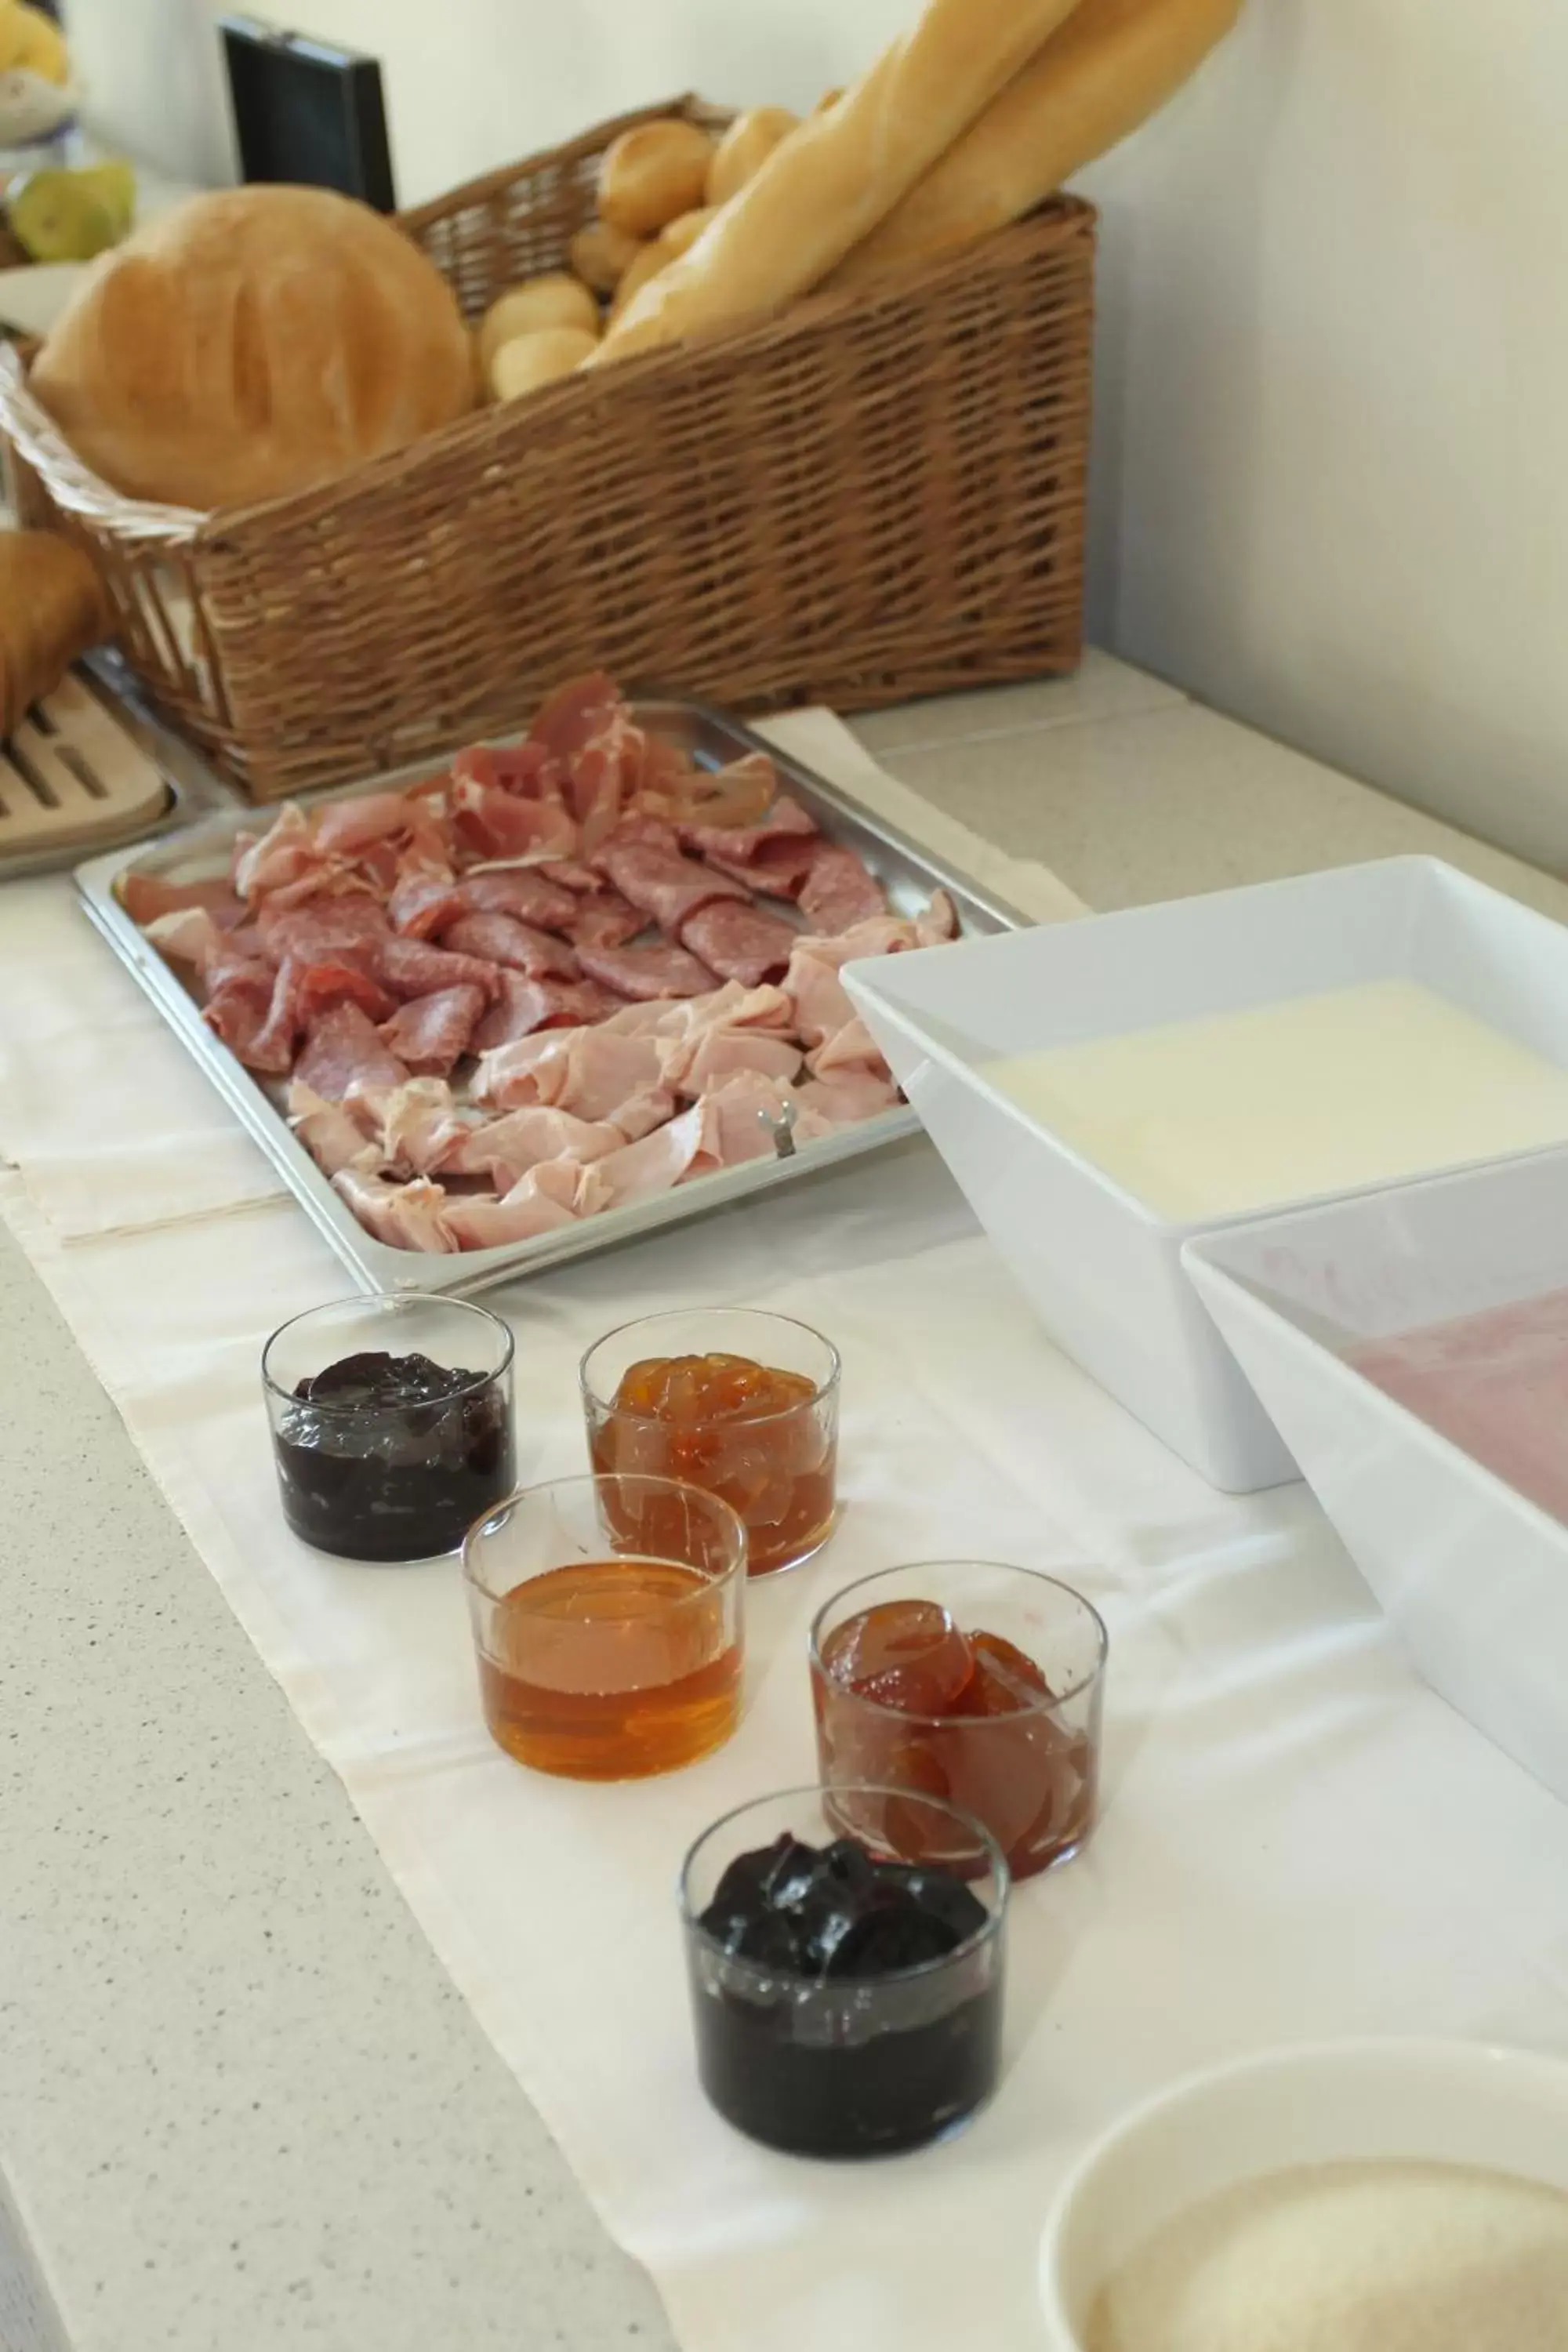 Buffet breakfast in Mini Hotel